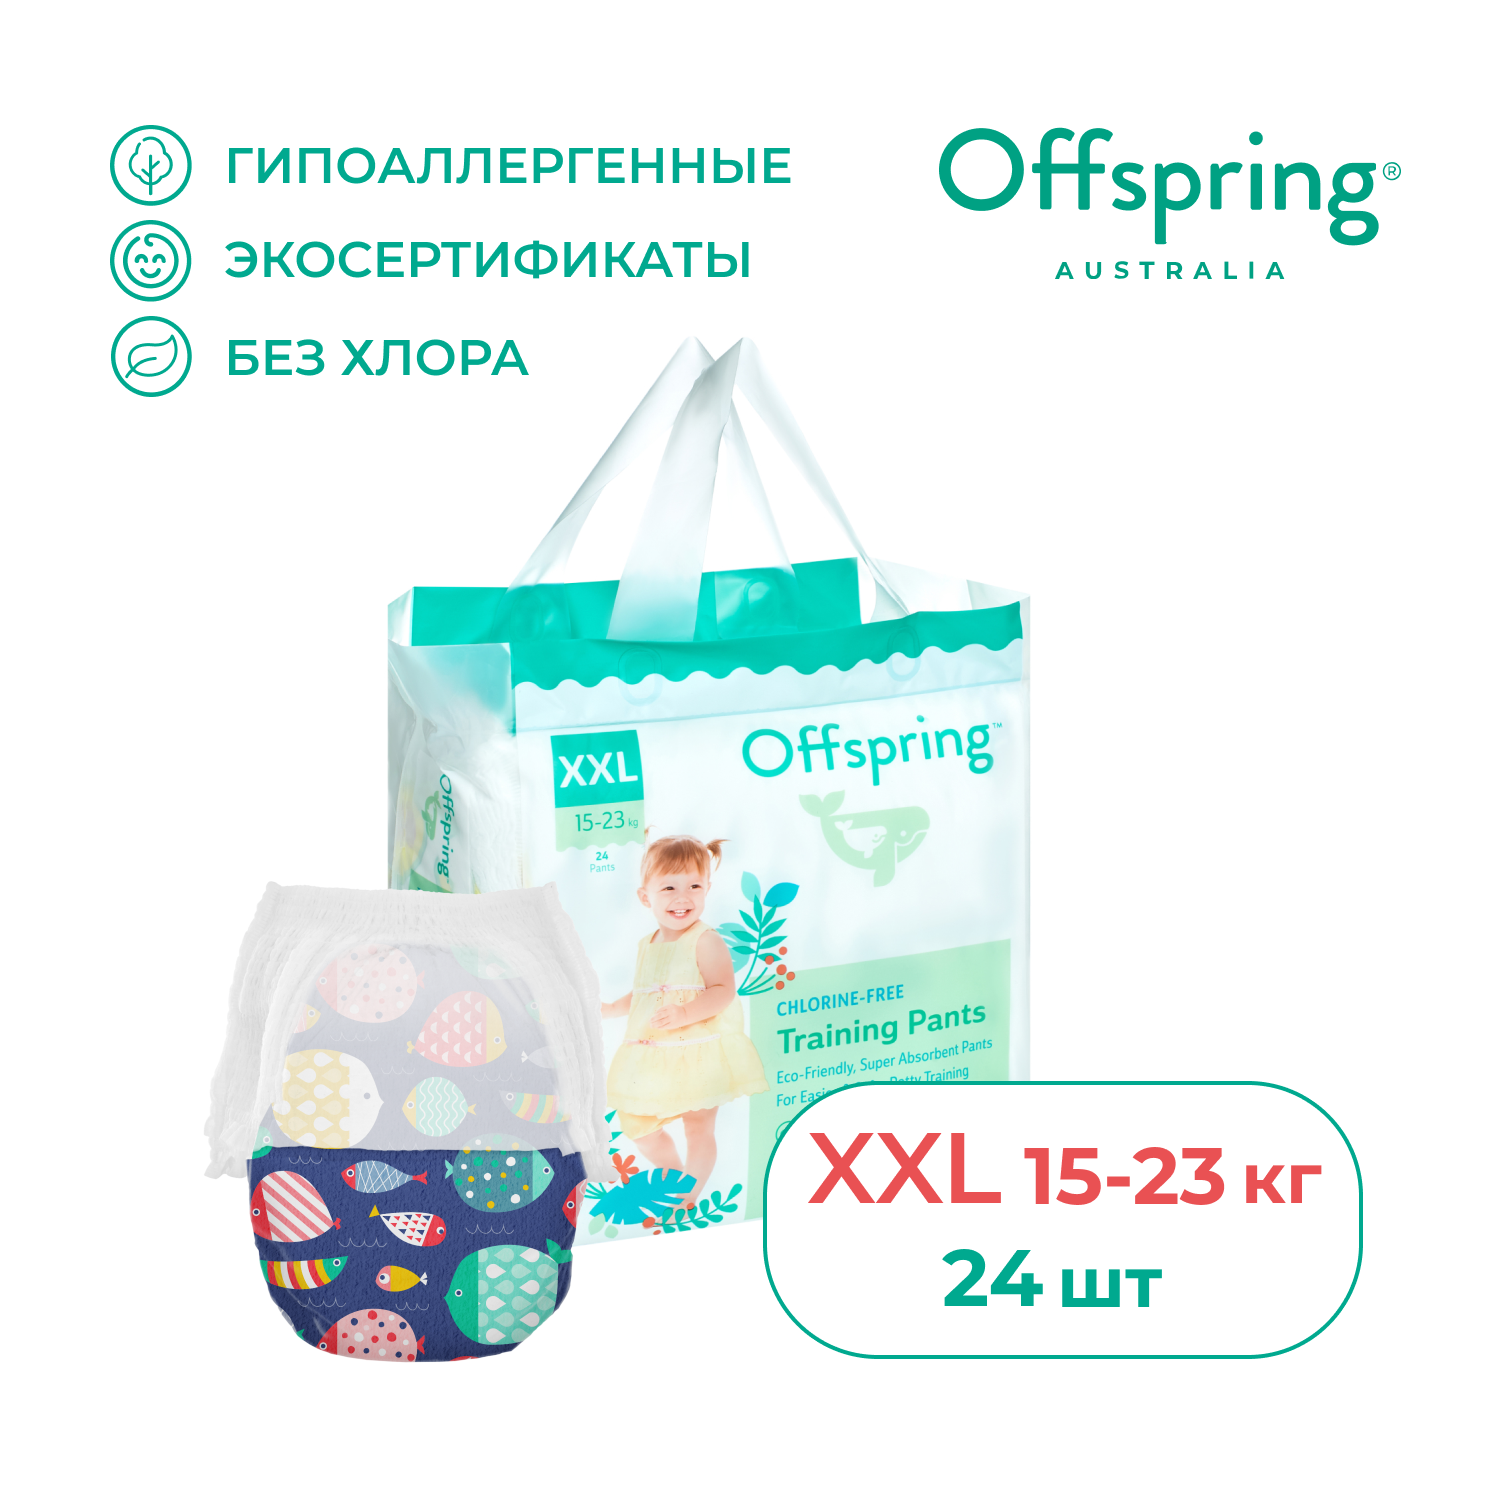 Трусики-подгузники Offspring XXL 15-23 кг 24 шт расцветка Рыбки - фото 1